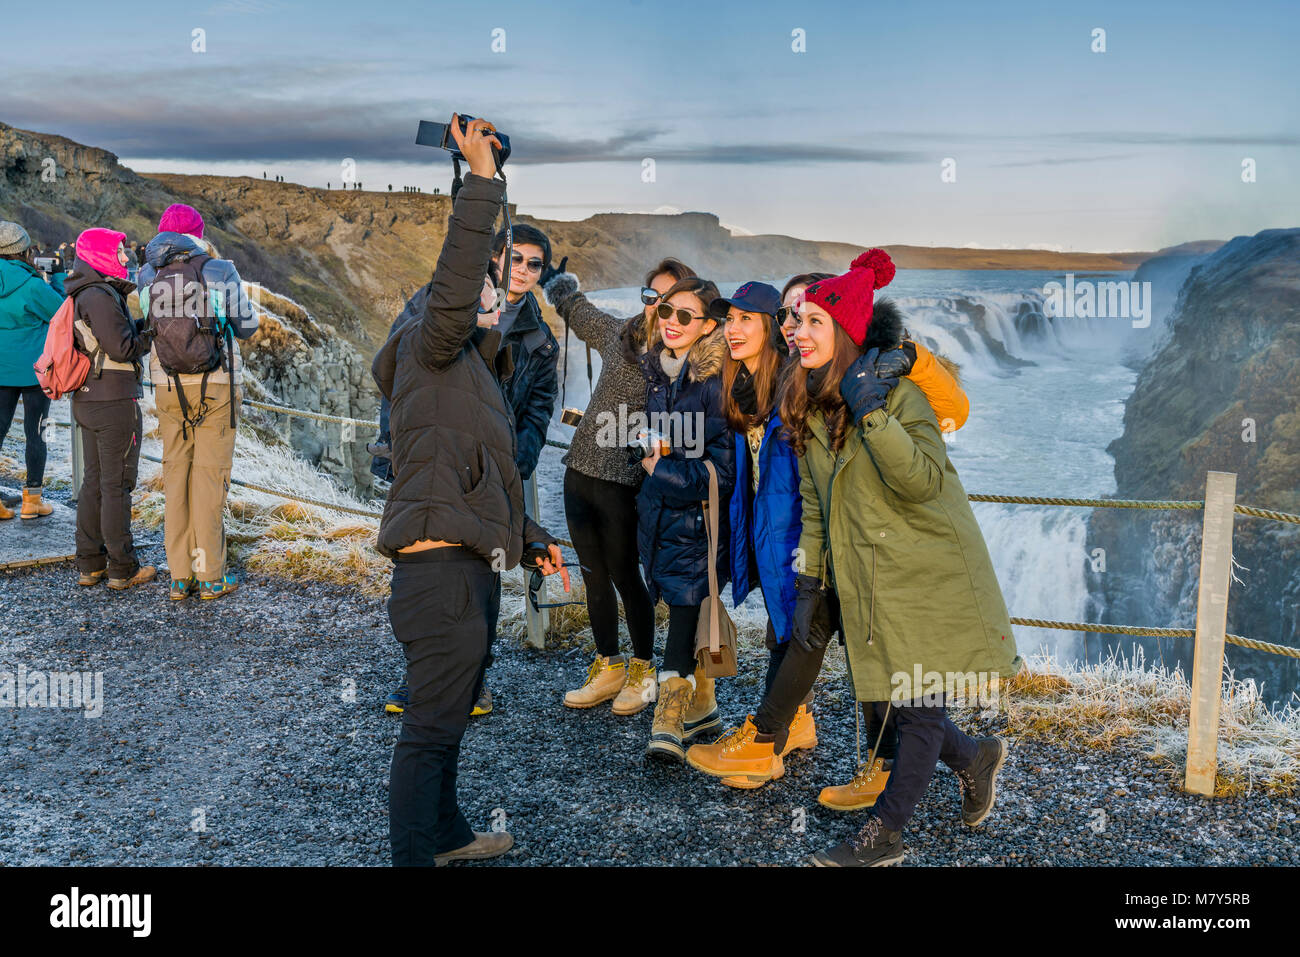 Touristen fotografieren am Gullfoss Wasserfall, Island Touristen fotografieren am Gullfoss, Island Stockfoto